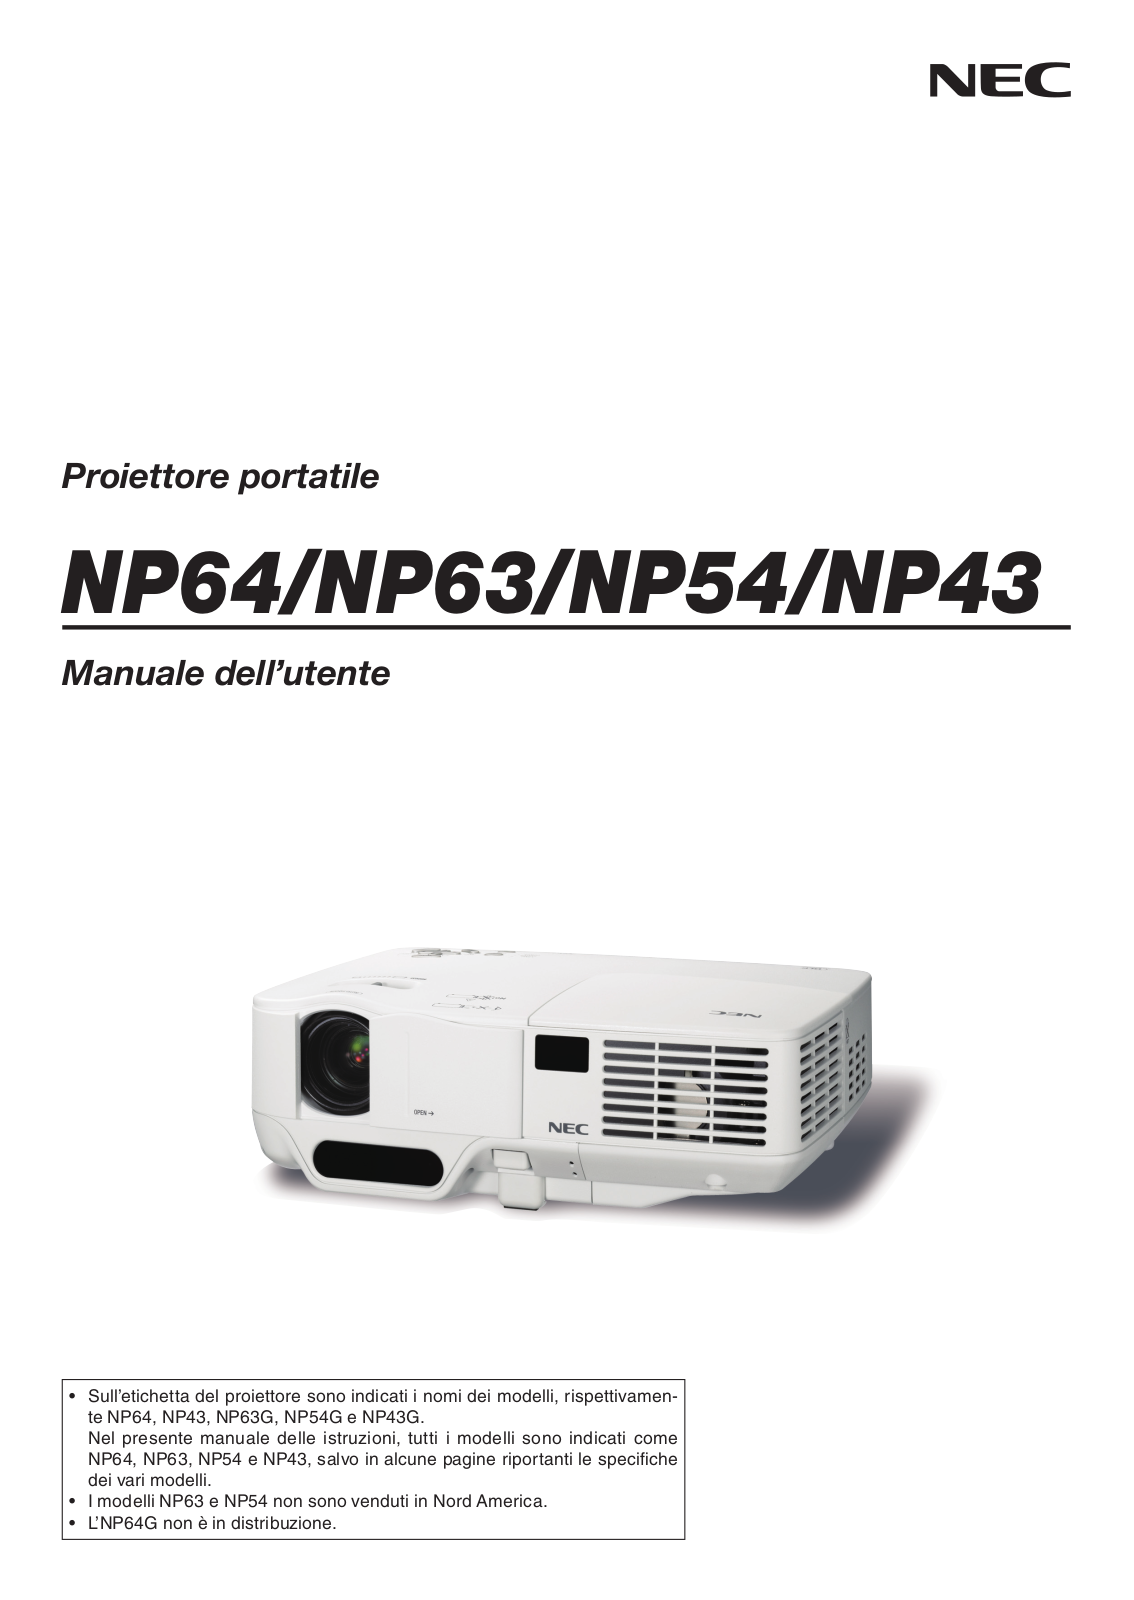 NEC NP64, NP63, NP54, NP43 User Manual